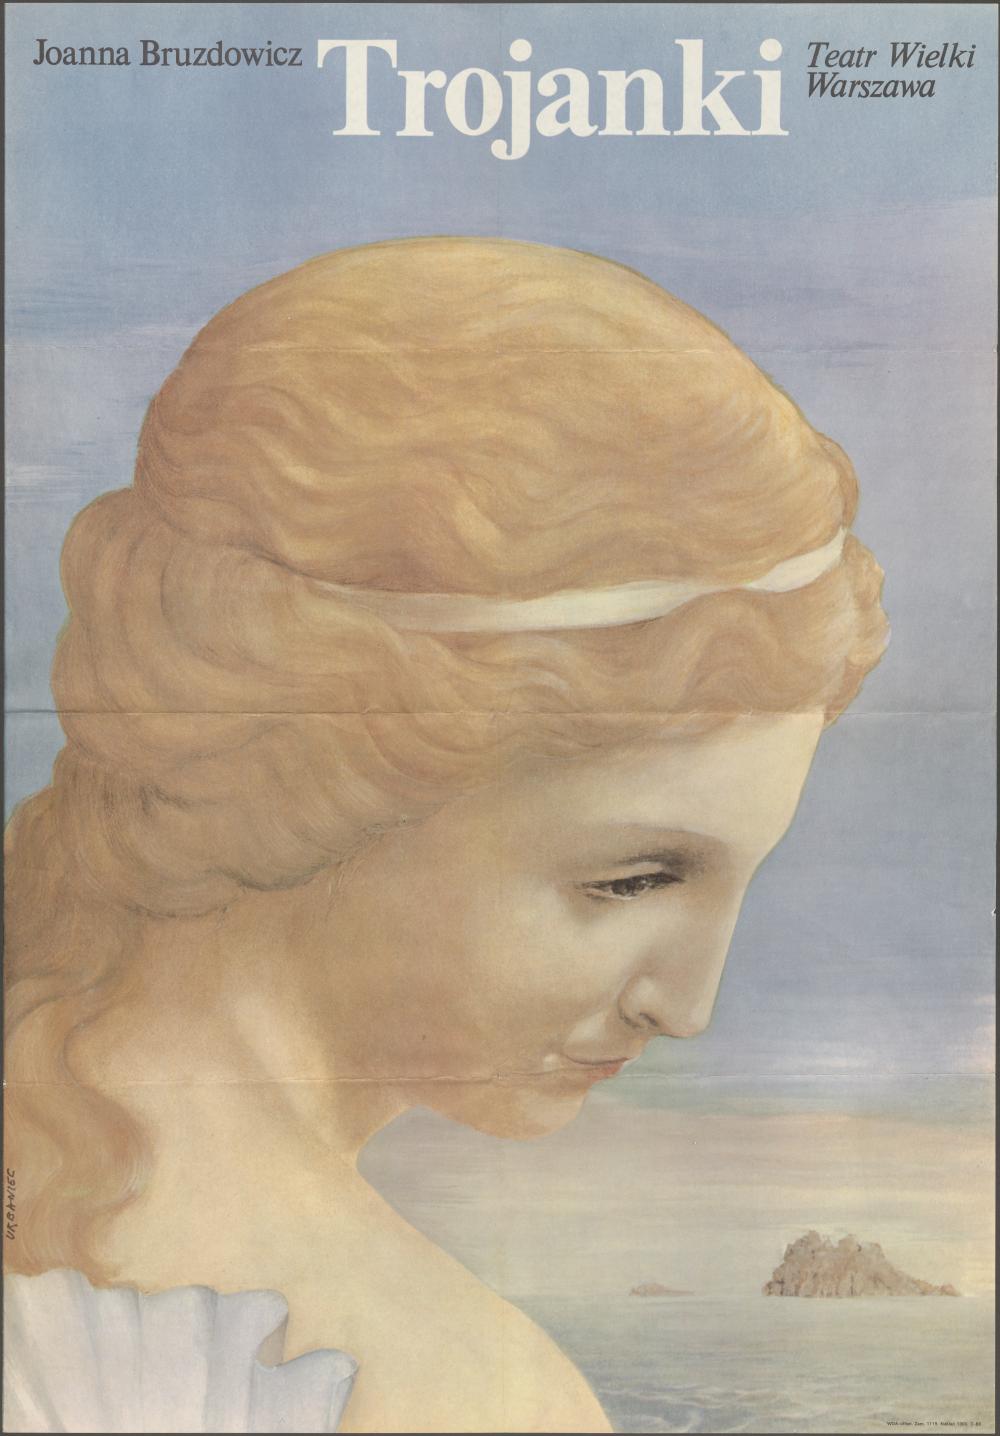 Plakat „Trojanki” Joanna Bruzdowicz 20-07-1979